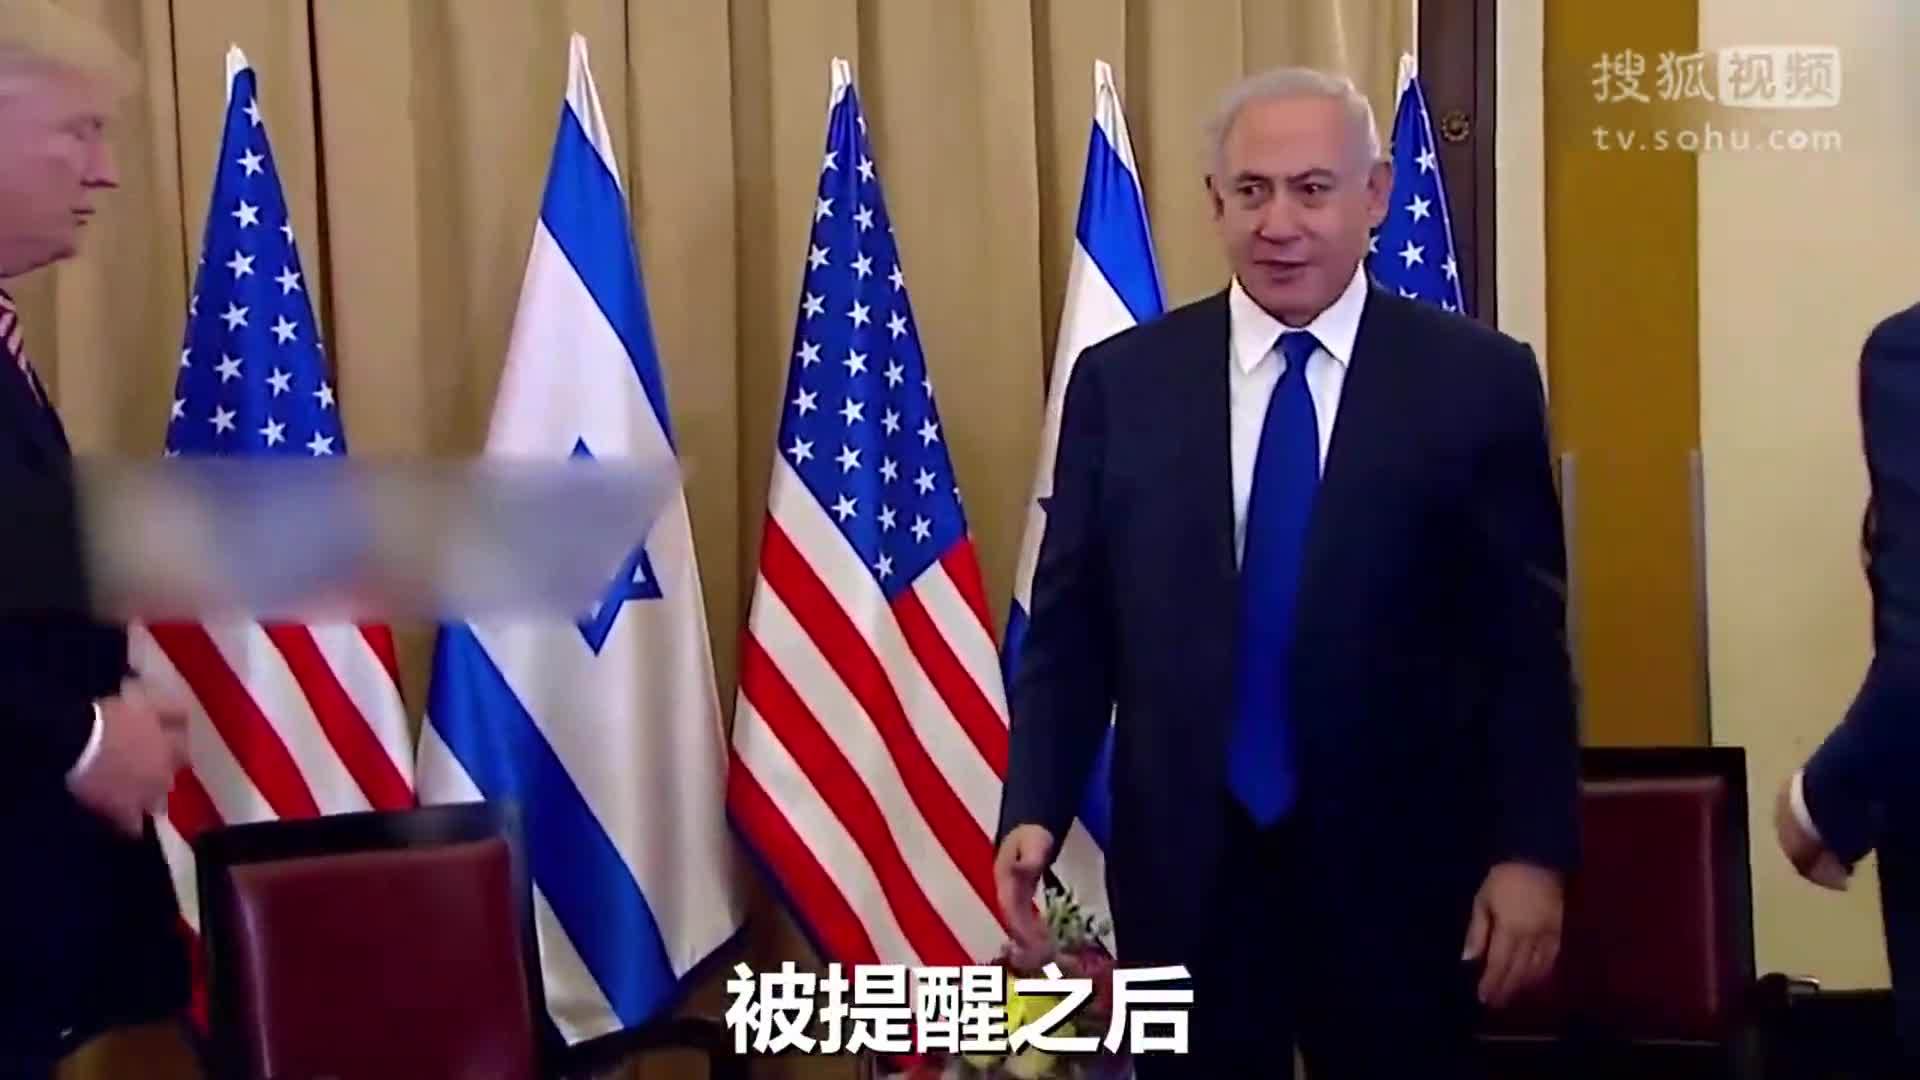 简直是魔咒！以色列总理起身跟特朗普握手 特朗普又走开了